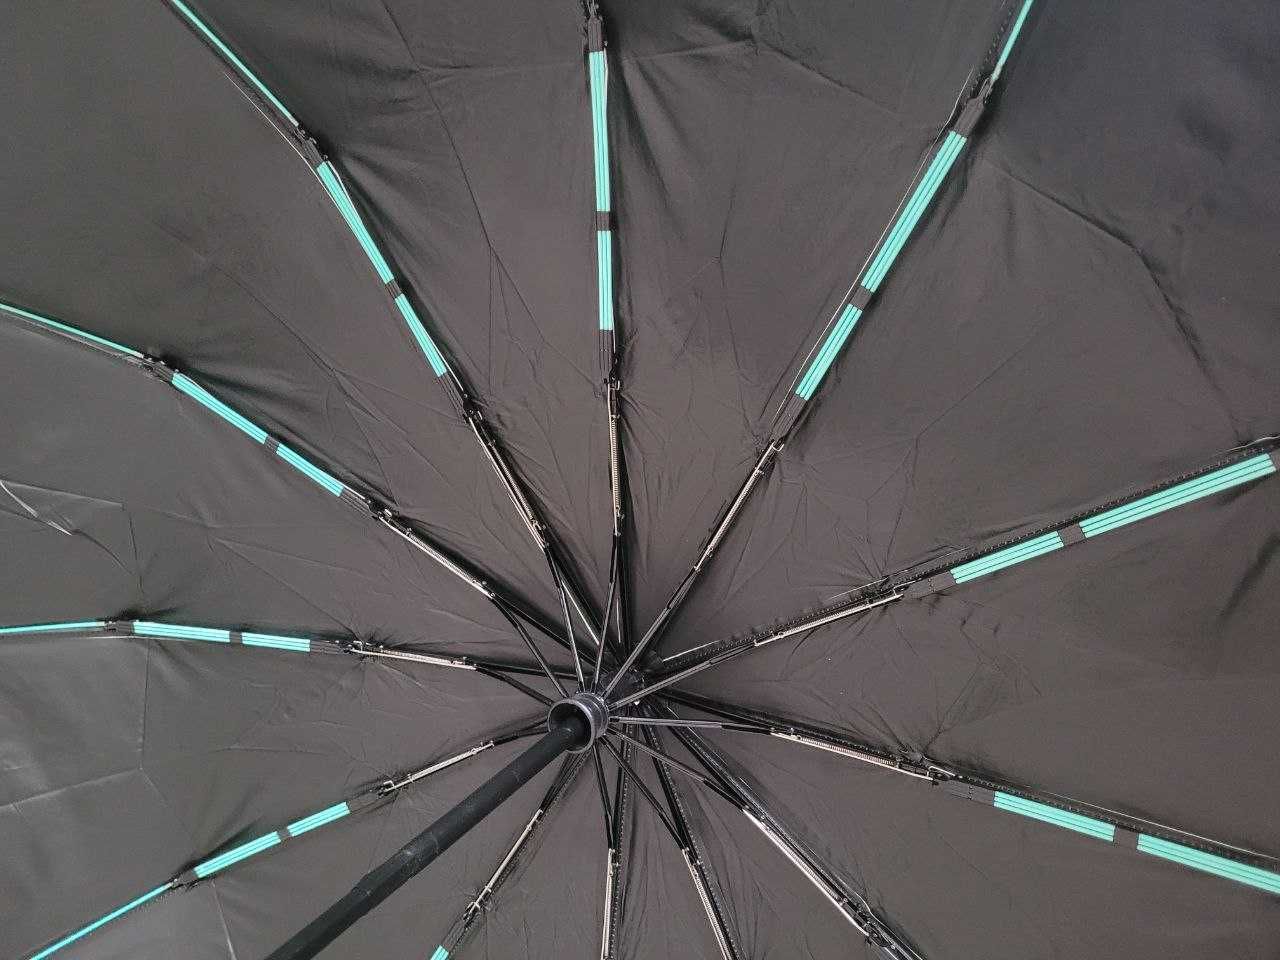 Прочный женский зонт-автомат  12карбоновых ТРОЙНЫХ  спиц антиветер SKS